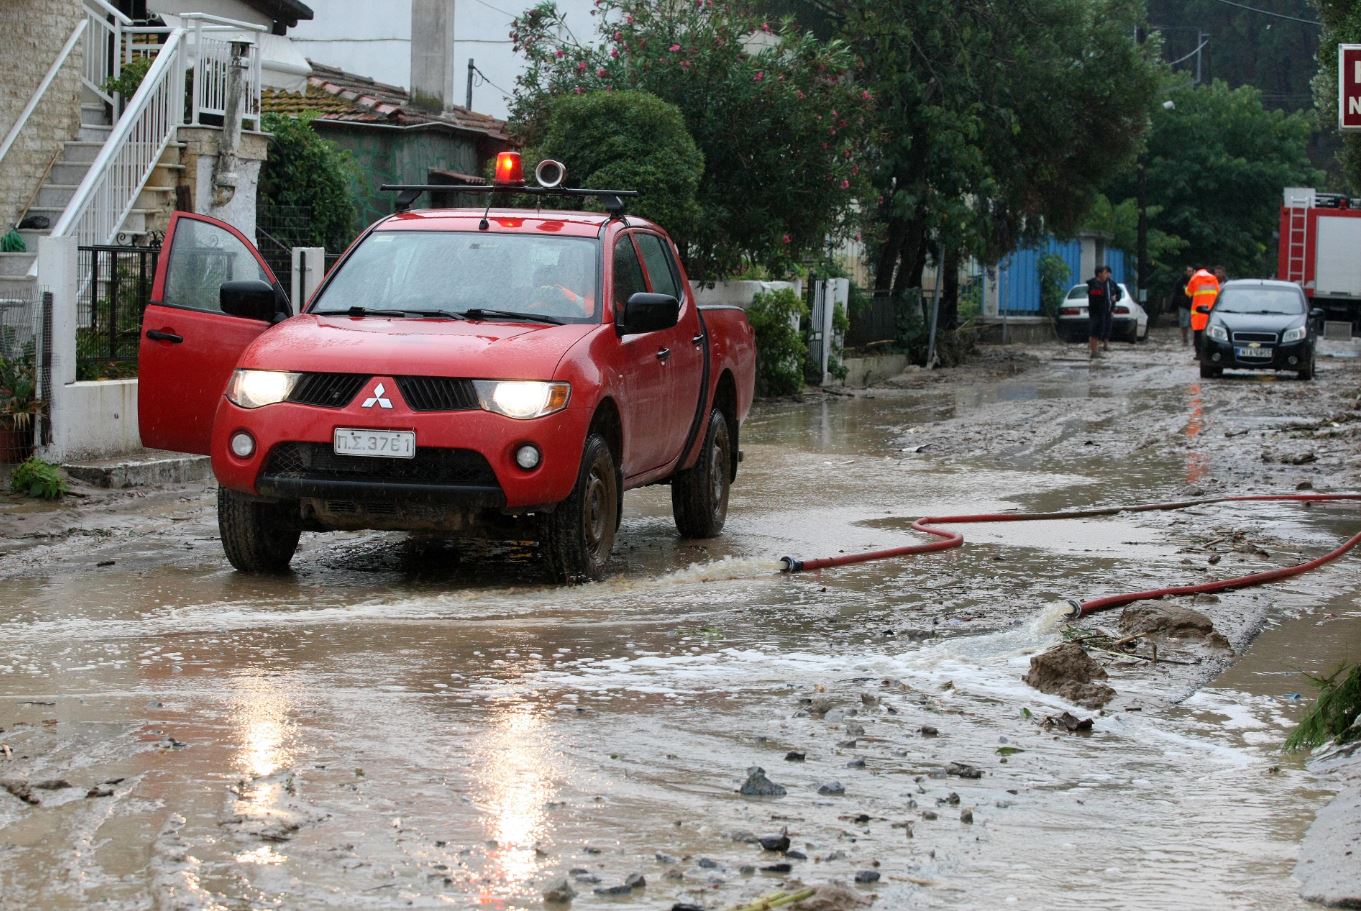 Σοβαρά προβλήματα στο οδικό δίκτυο της νότιας Πελοποννήσου